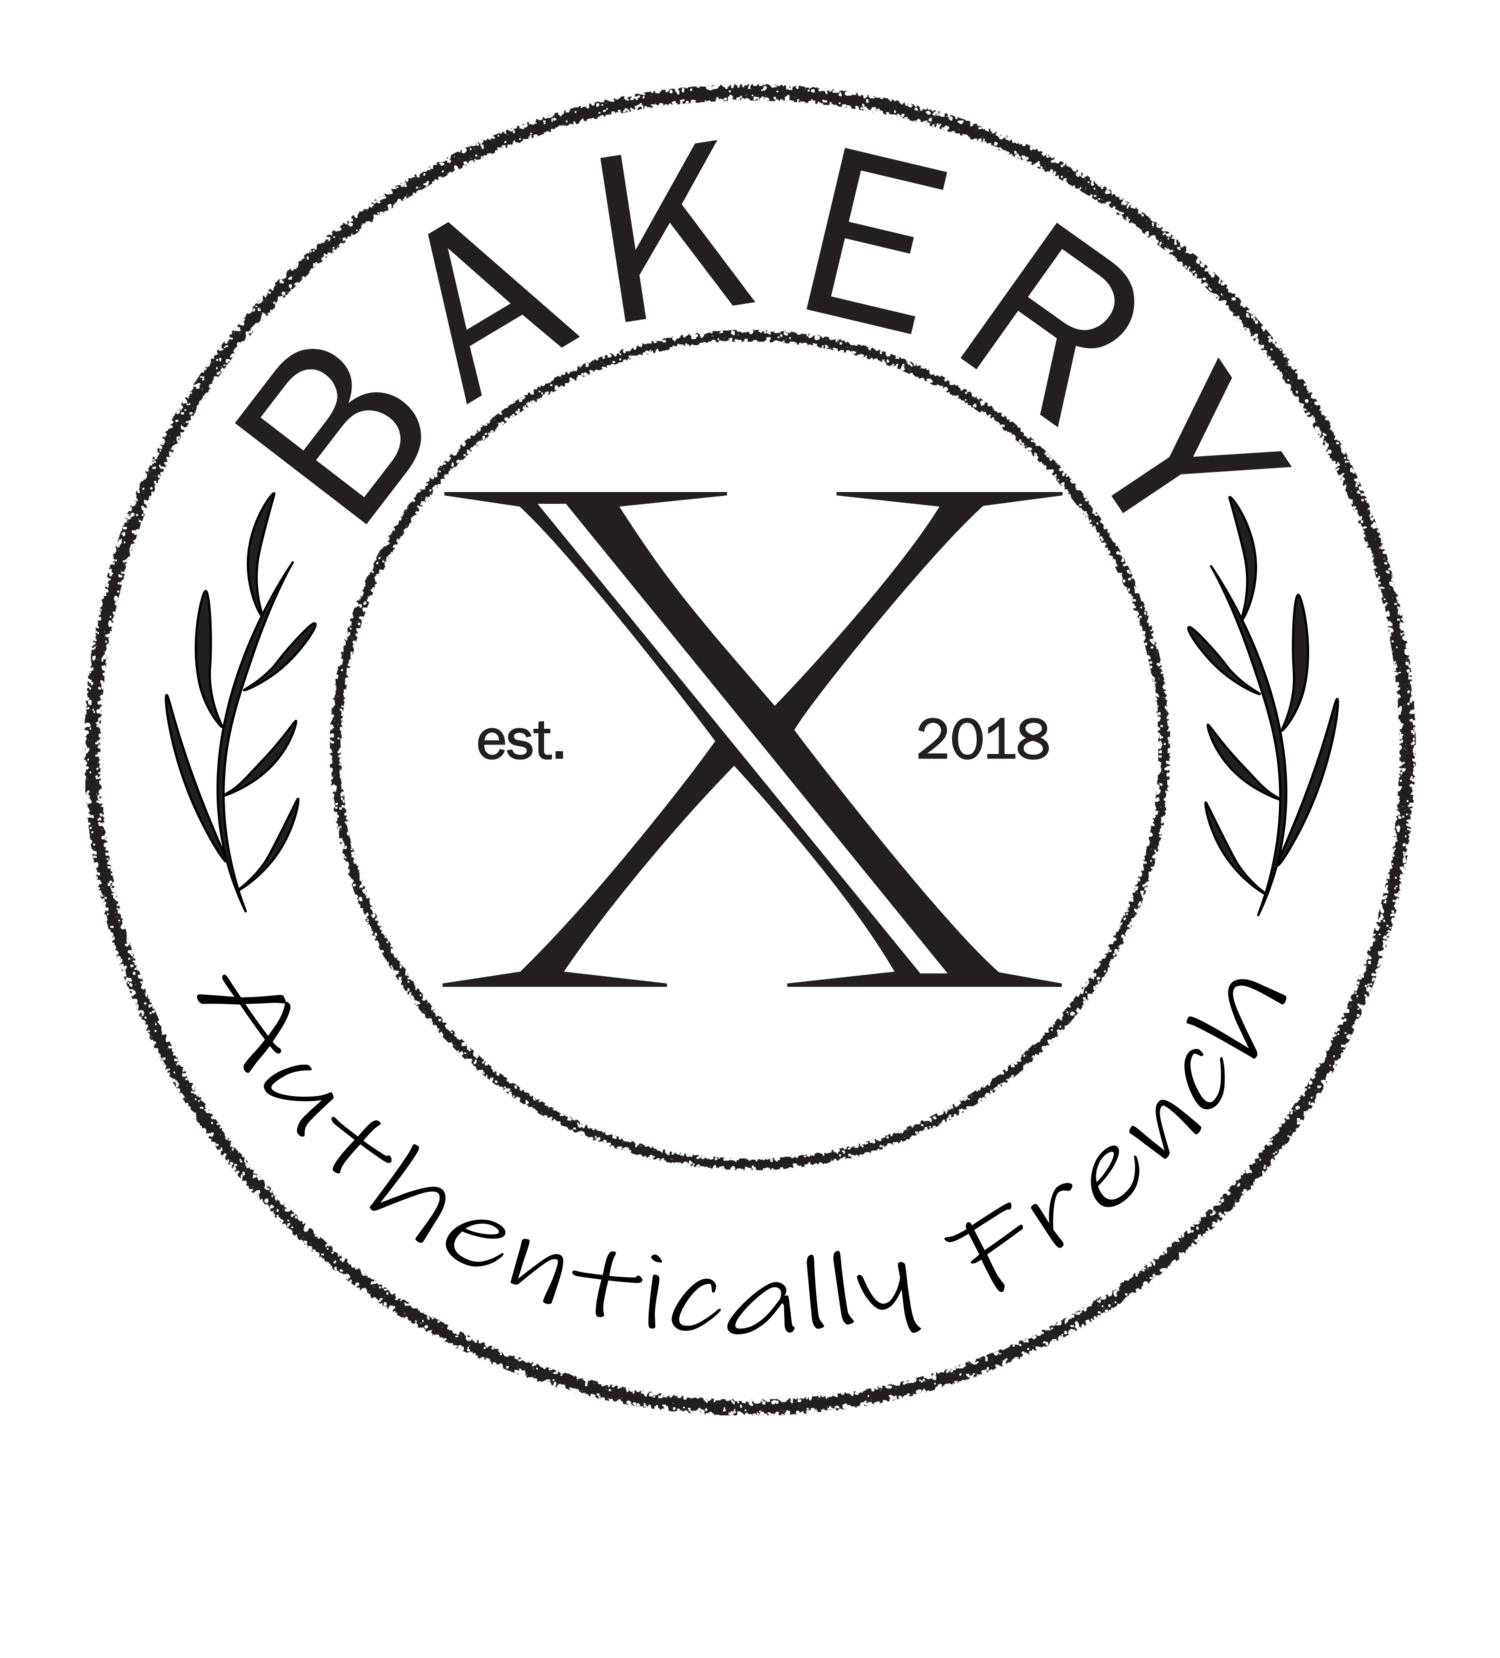 Bakery-X